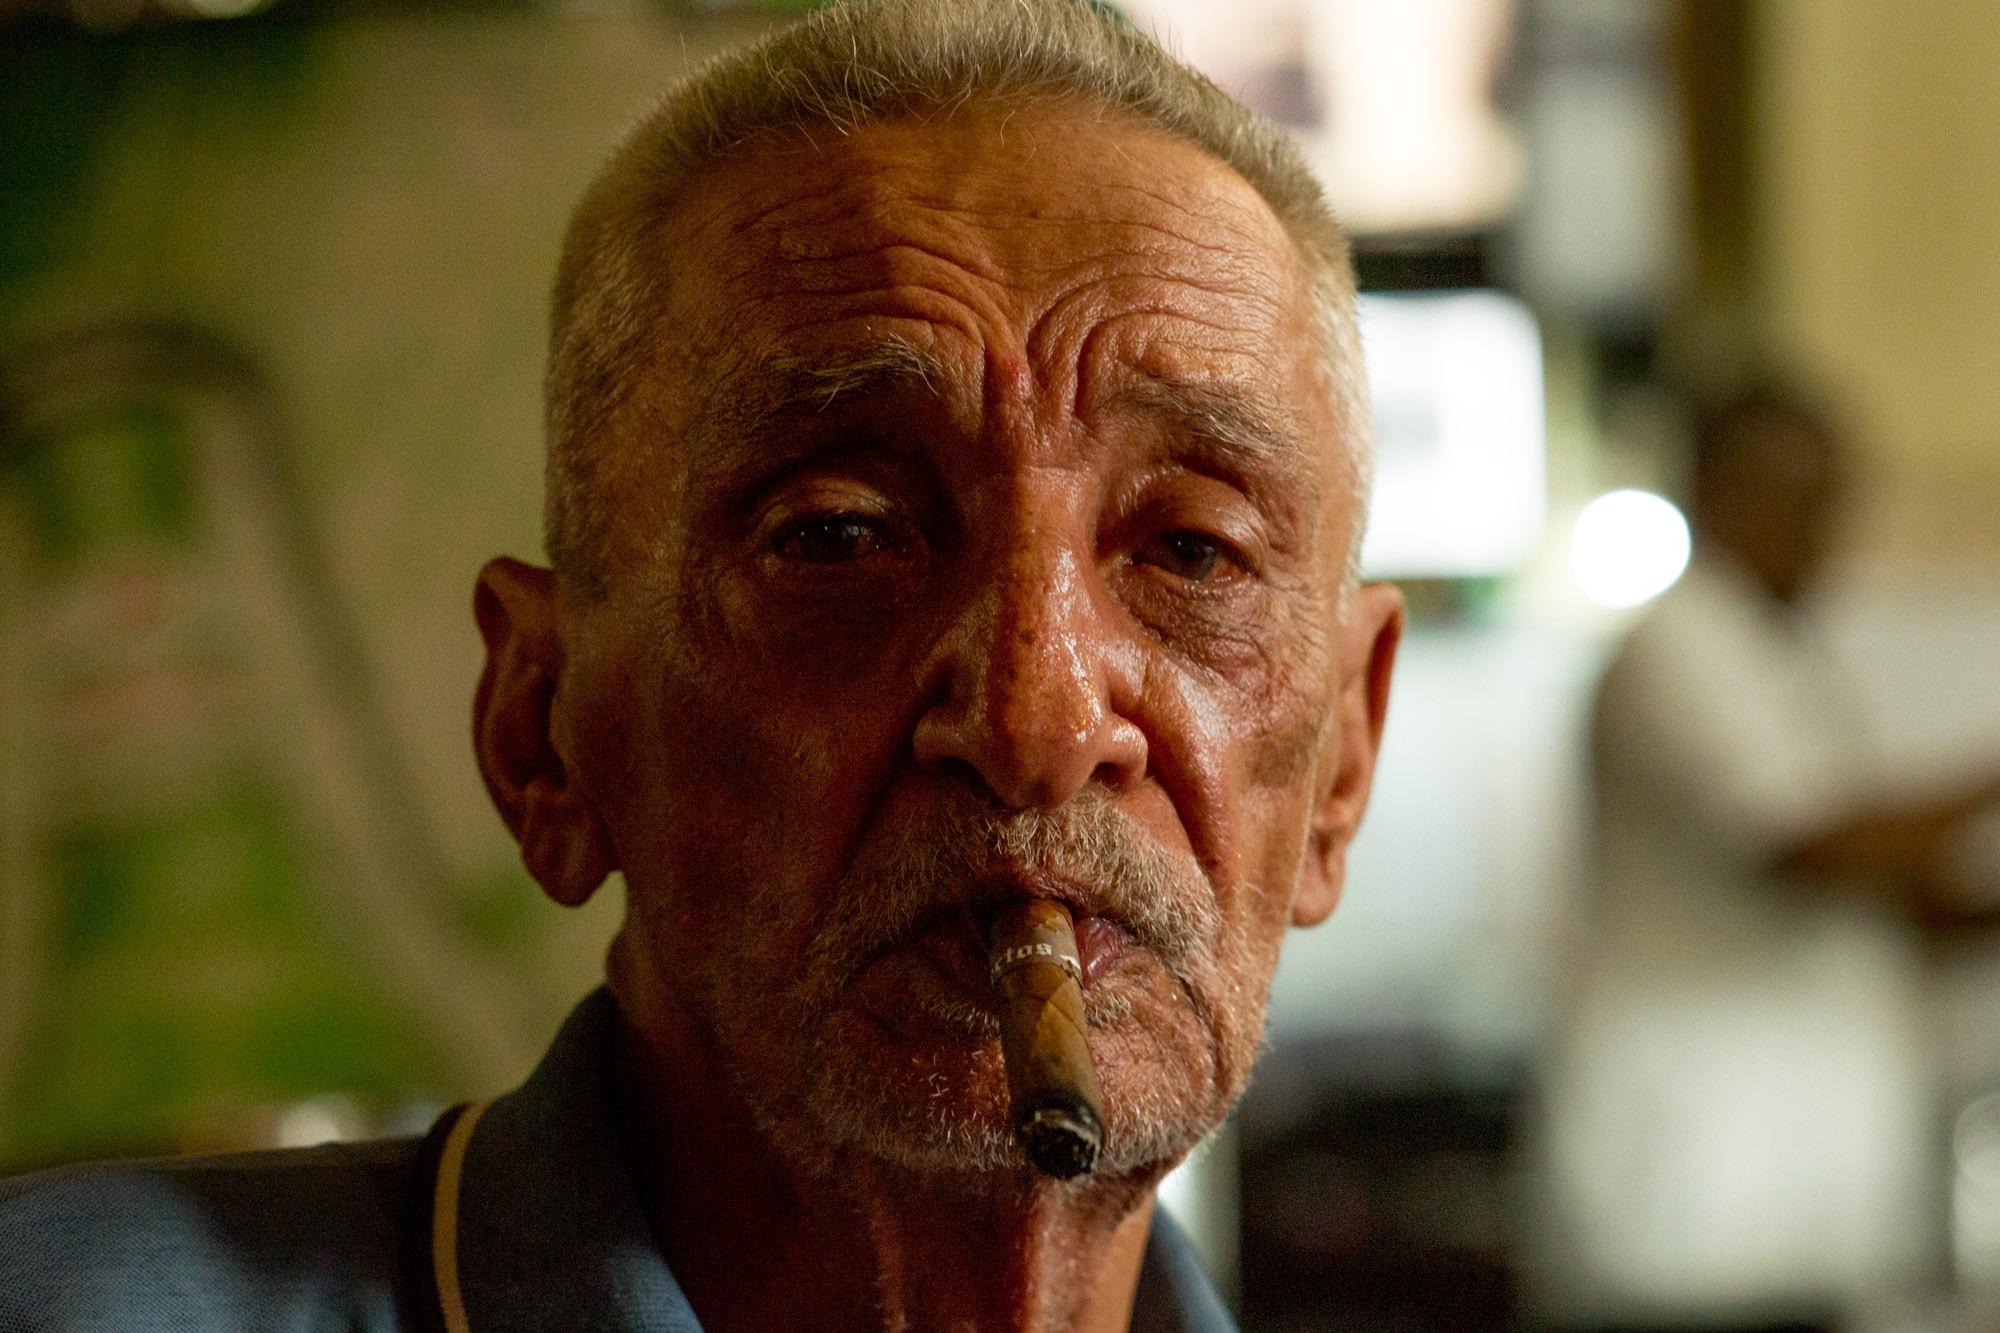 An old man smoking a cigar.